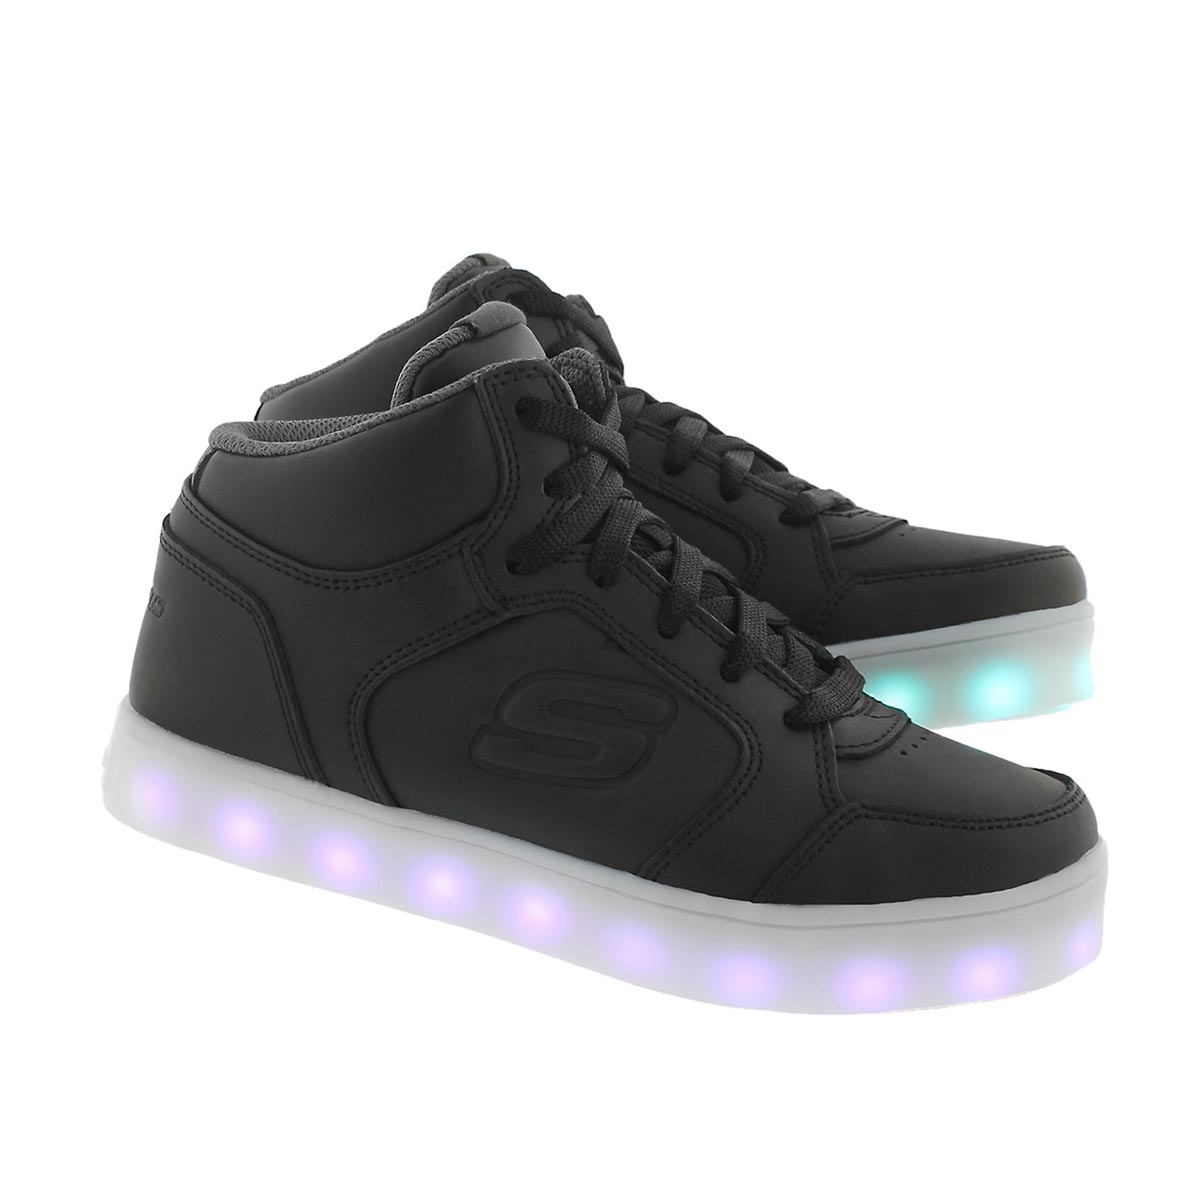 Skechers Unisex Energy Lights Light Up High Top Sneaker | eBay